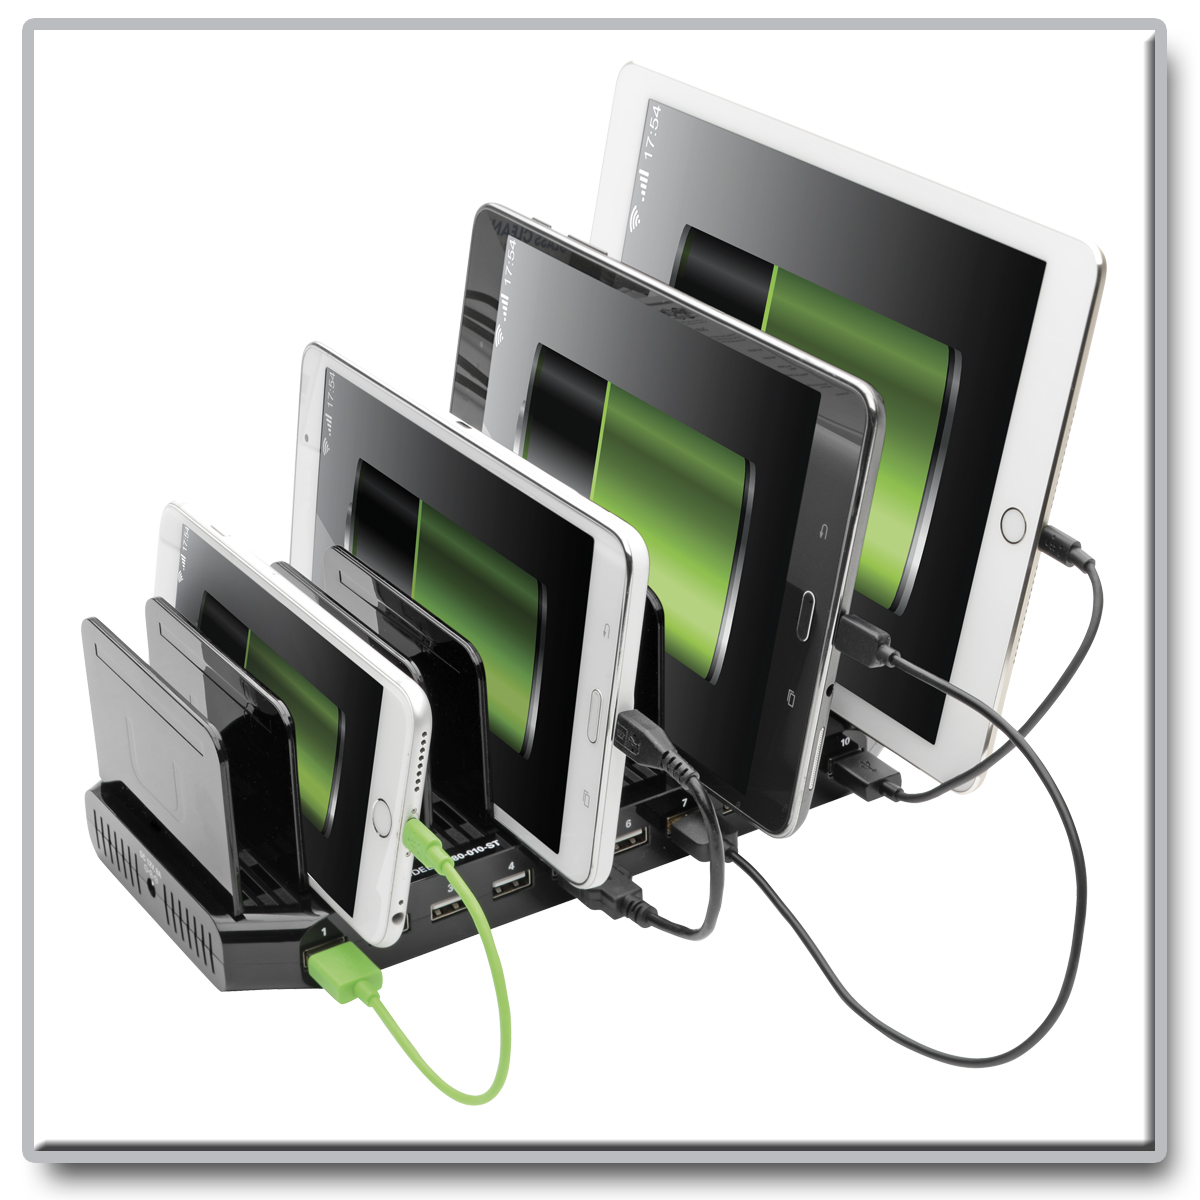 Tripp Lite 10-Port USB Charging Station Hub w Adjustable Storage Tablet /  Smartphone / iPad / Iphone 5V 21A 105W power - U280-010-ST - USB Hubs 